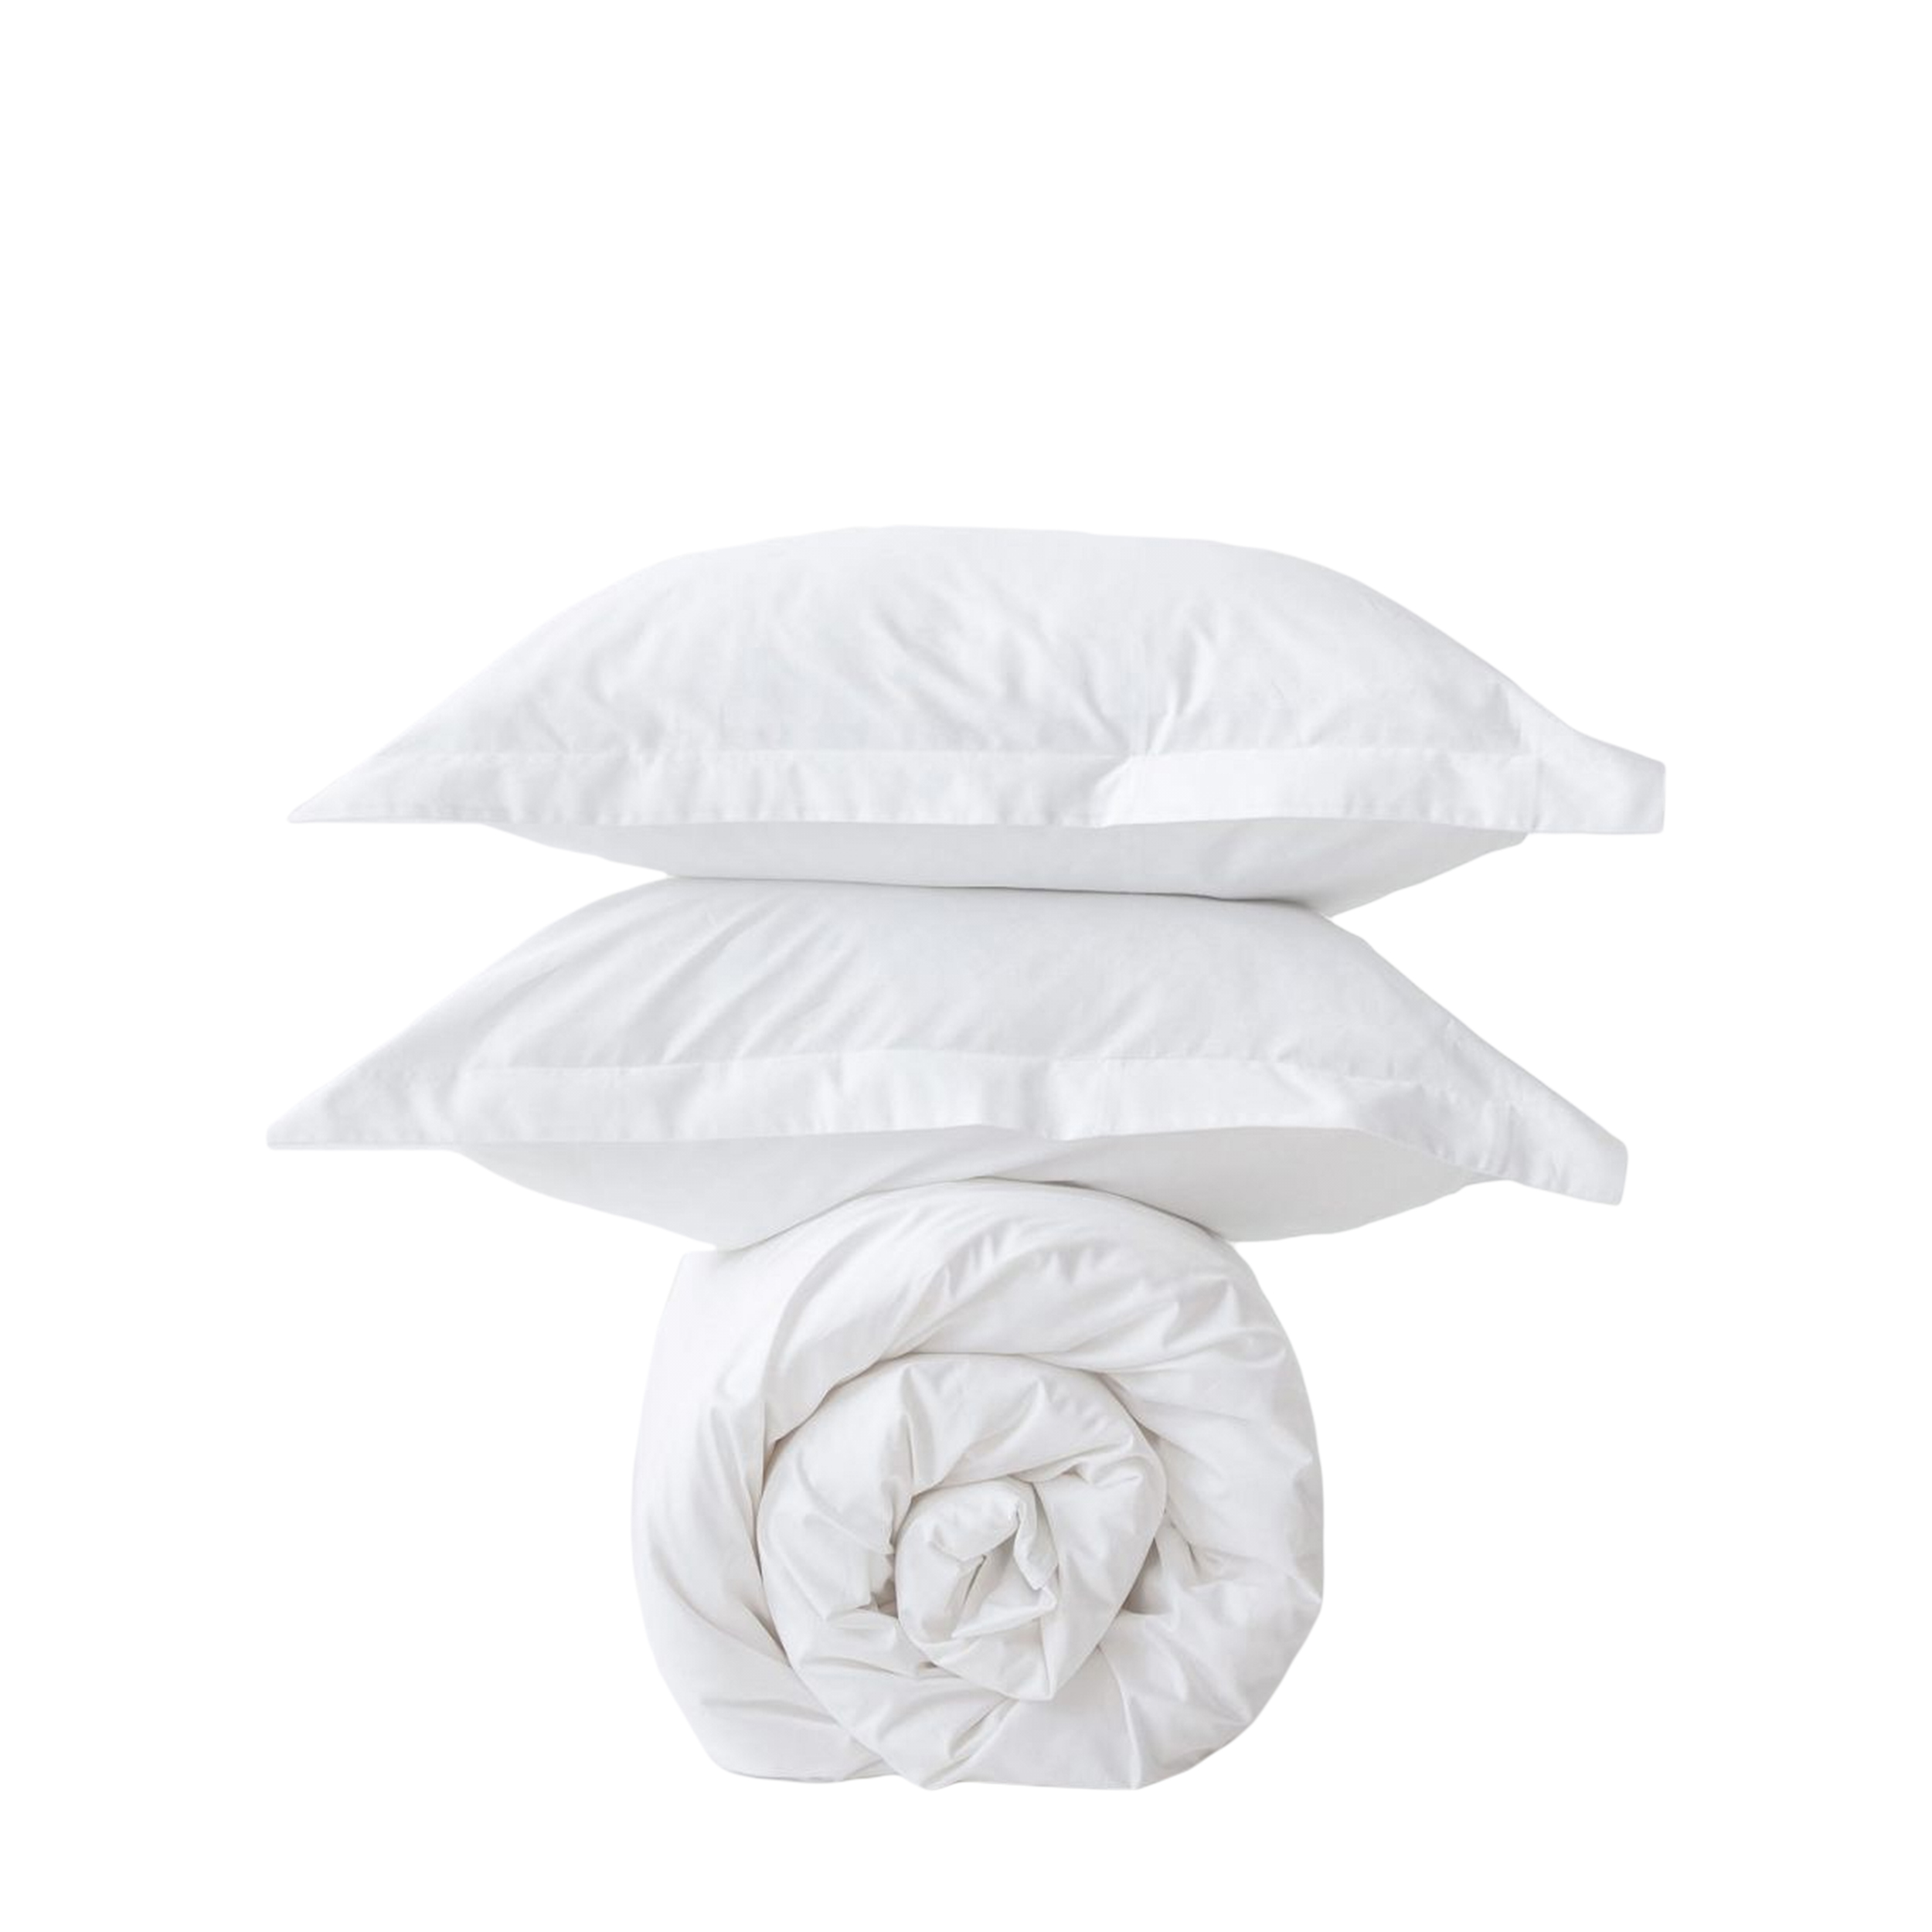 MORФEUS MORФEUS Комплект постельного белья Silk White, Семейный, сатин (150x200)